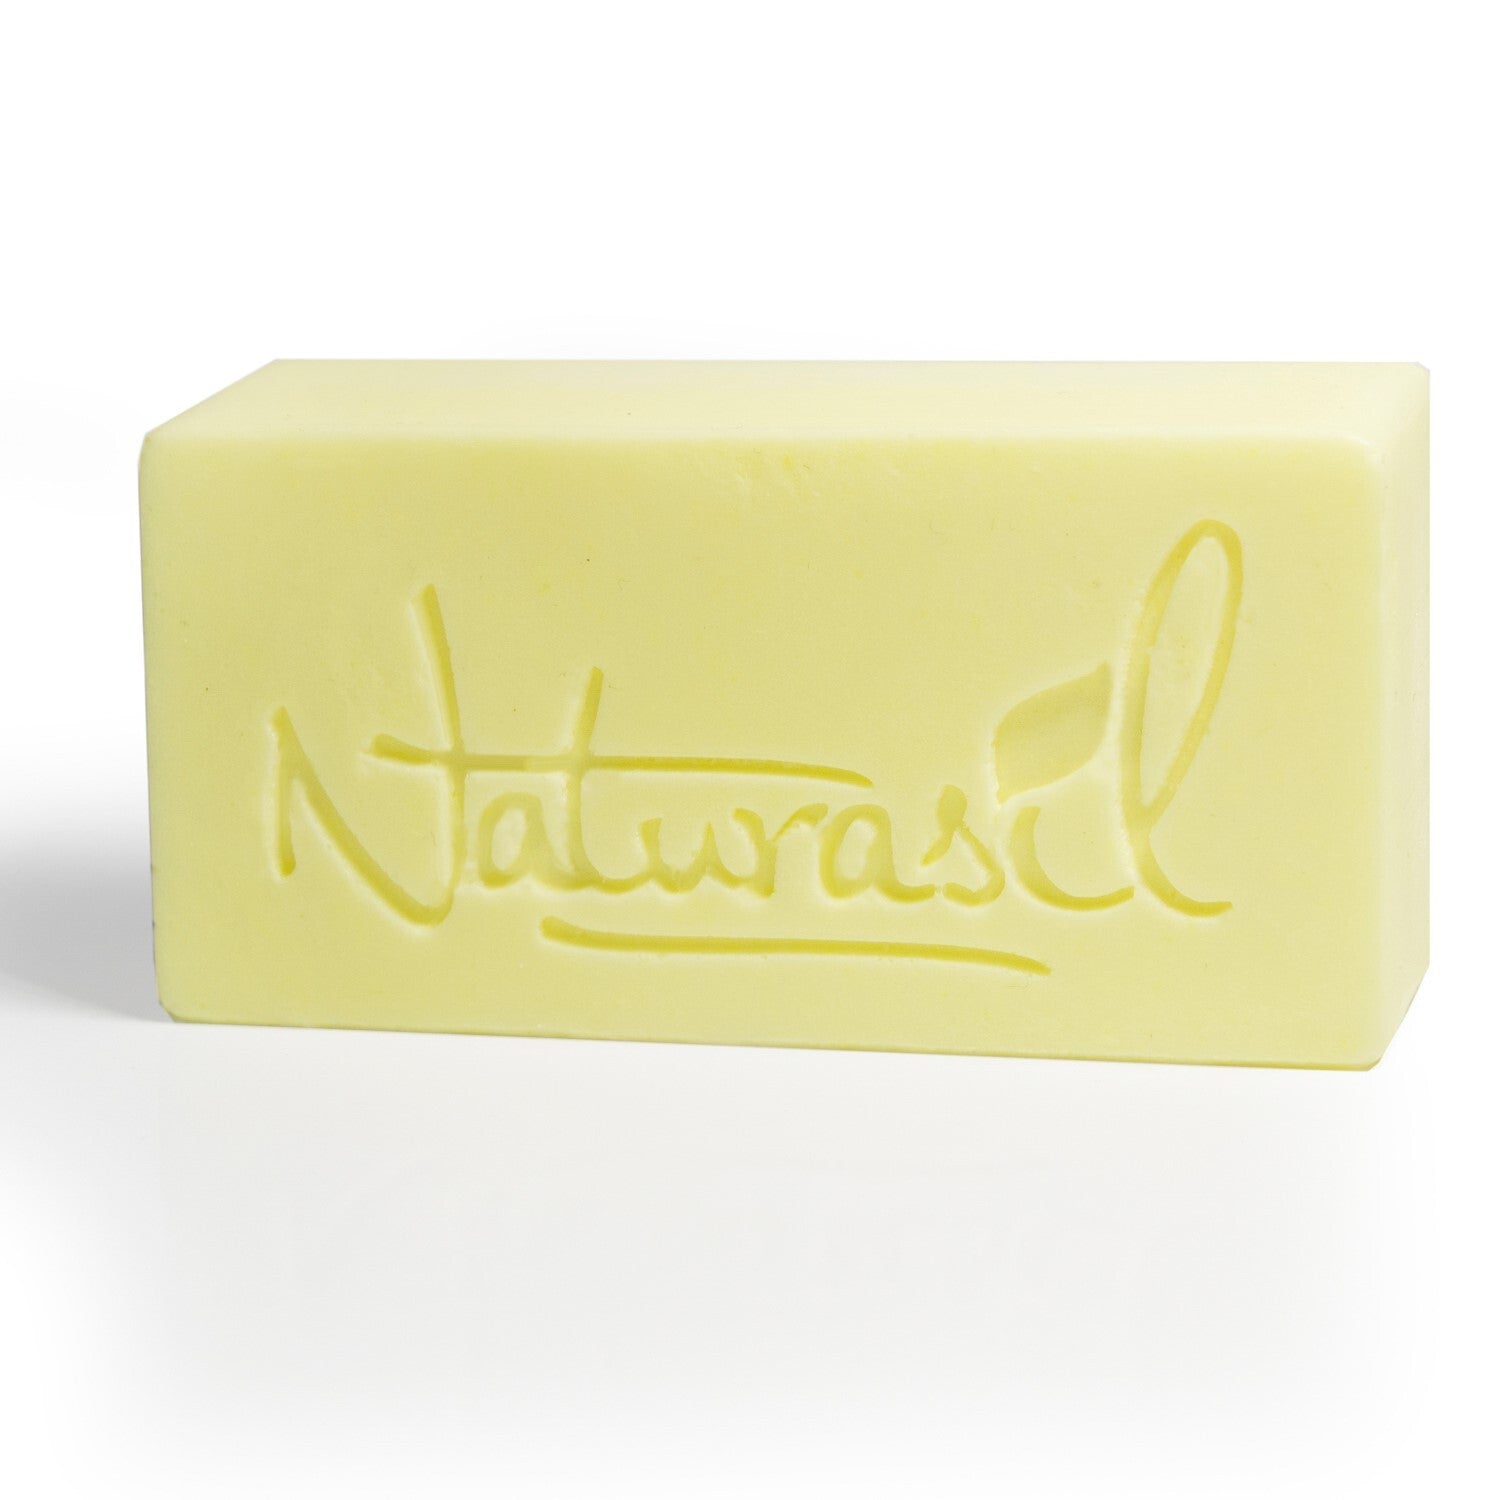 Premium Sulfur Lavender Soap | 10% Sulfur Advanced Cleansing Bar 4oz (6 - Pack) - Naturasil